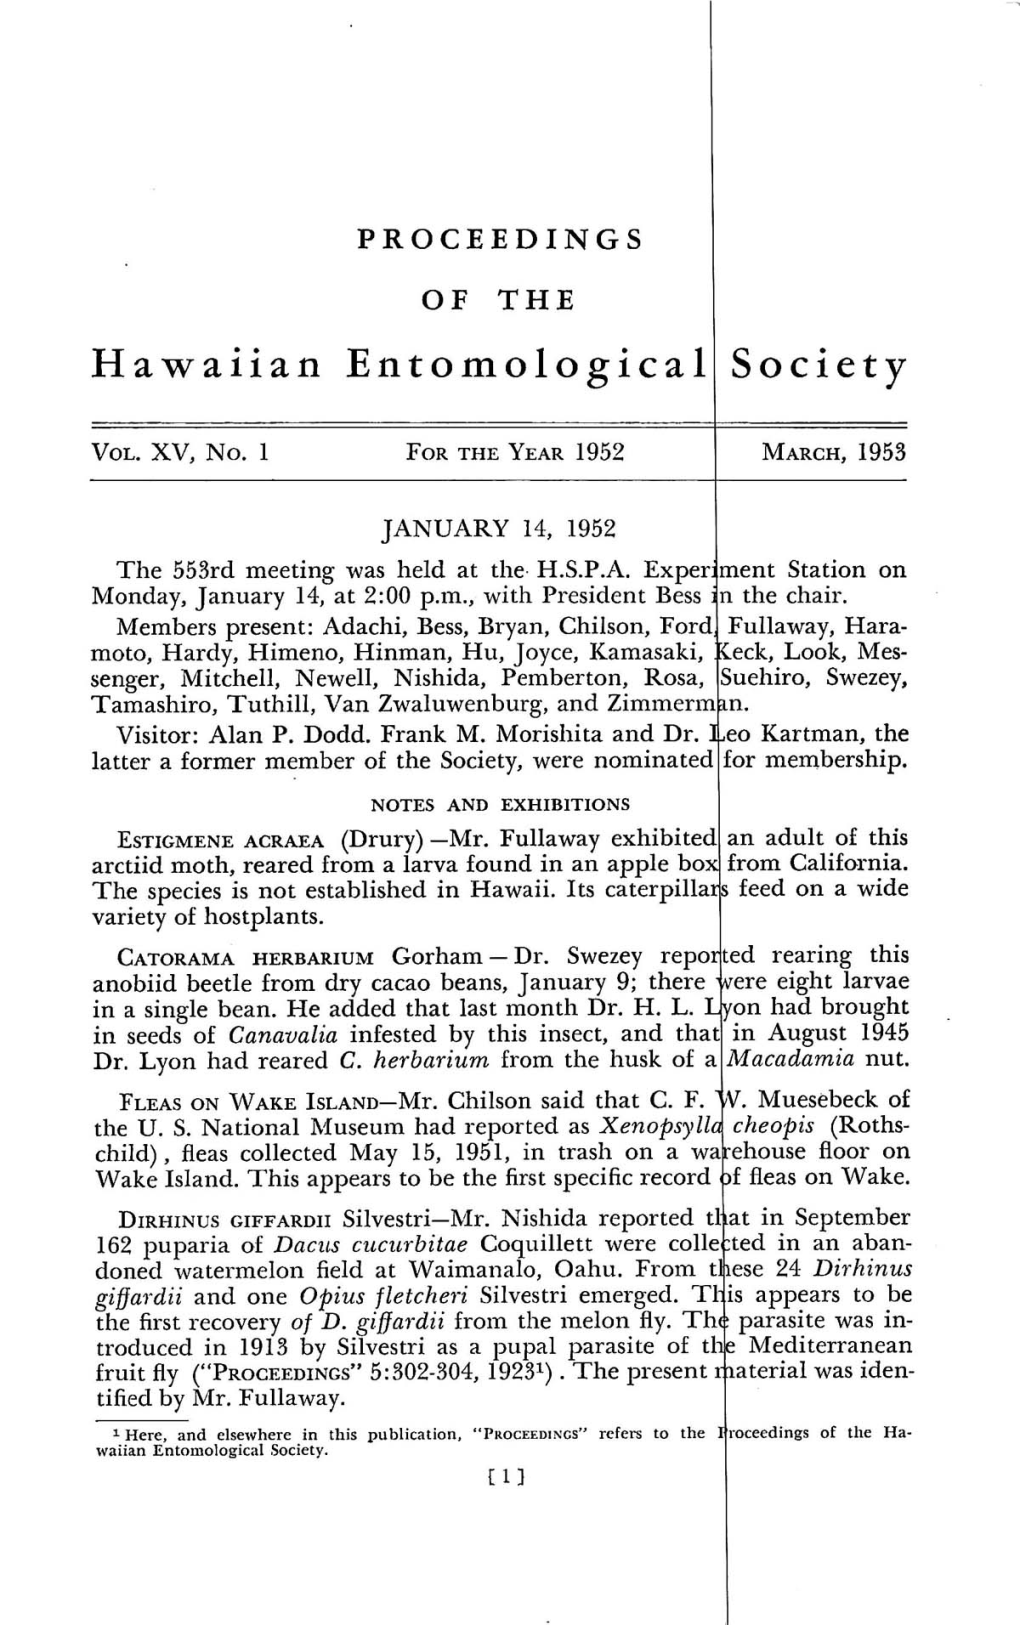 Hawaiian Entomological Society